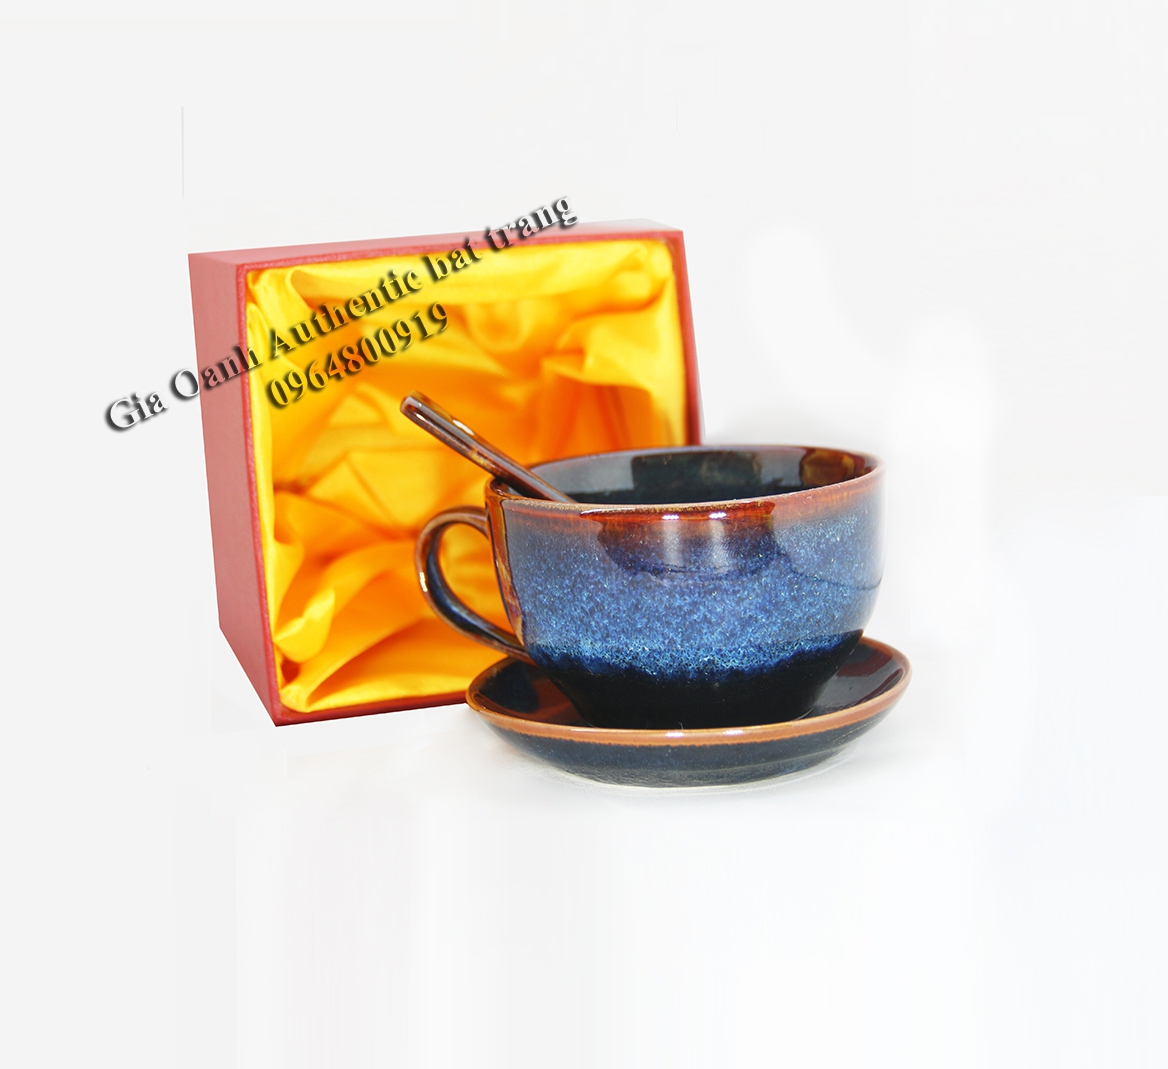 cappuccino gift set - Bộ quà tặng cốc cappuccino một bộ quà tăng đẹp, ý nghĩa và đẳng cấp - sản phẩm sản xuất tại xưởng gốm sứ Gia Oanh authentic bat trang